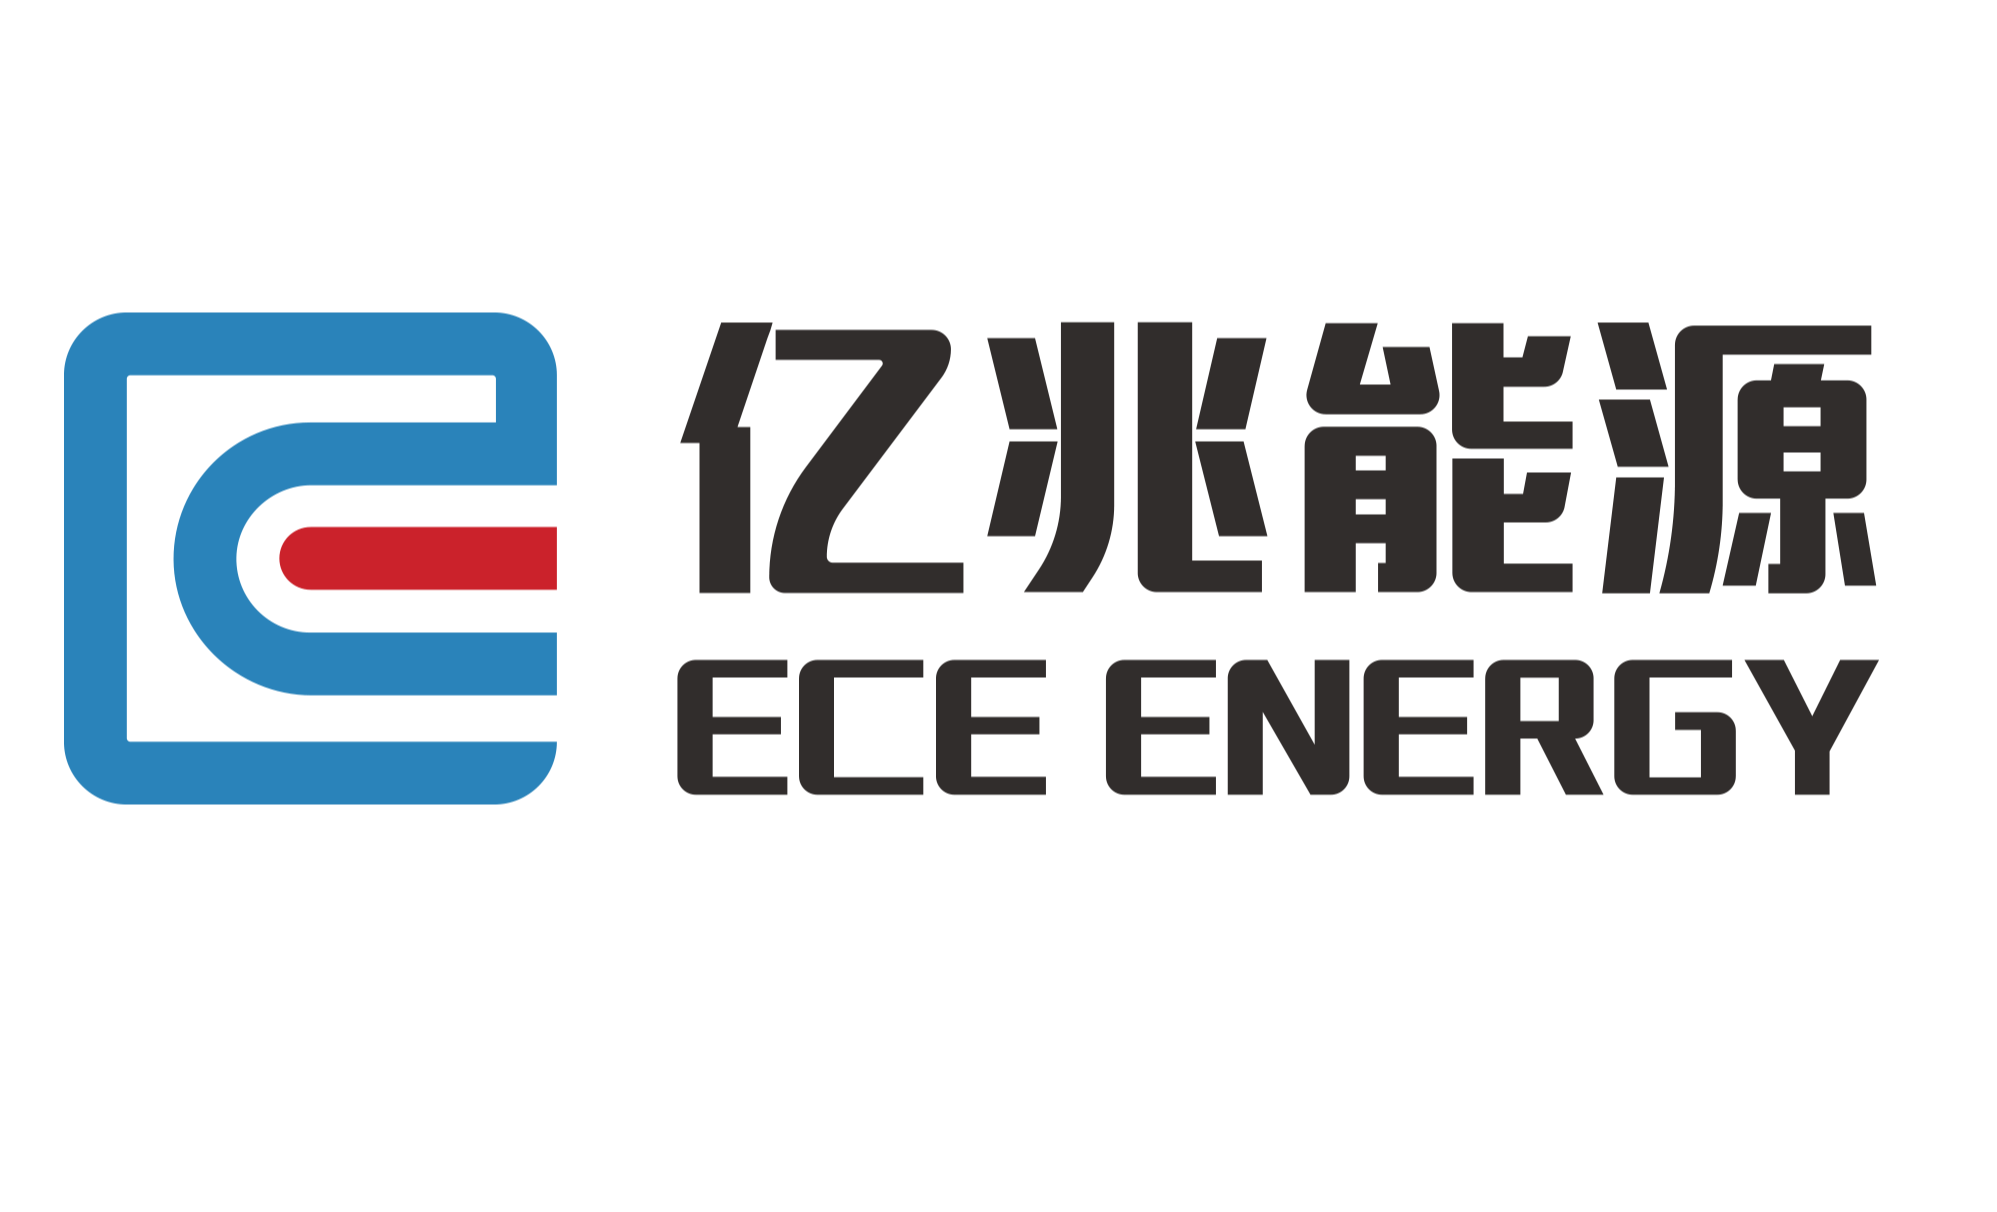 惠州市亿兆能源科技有限公司